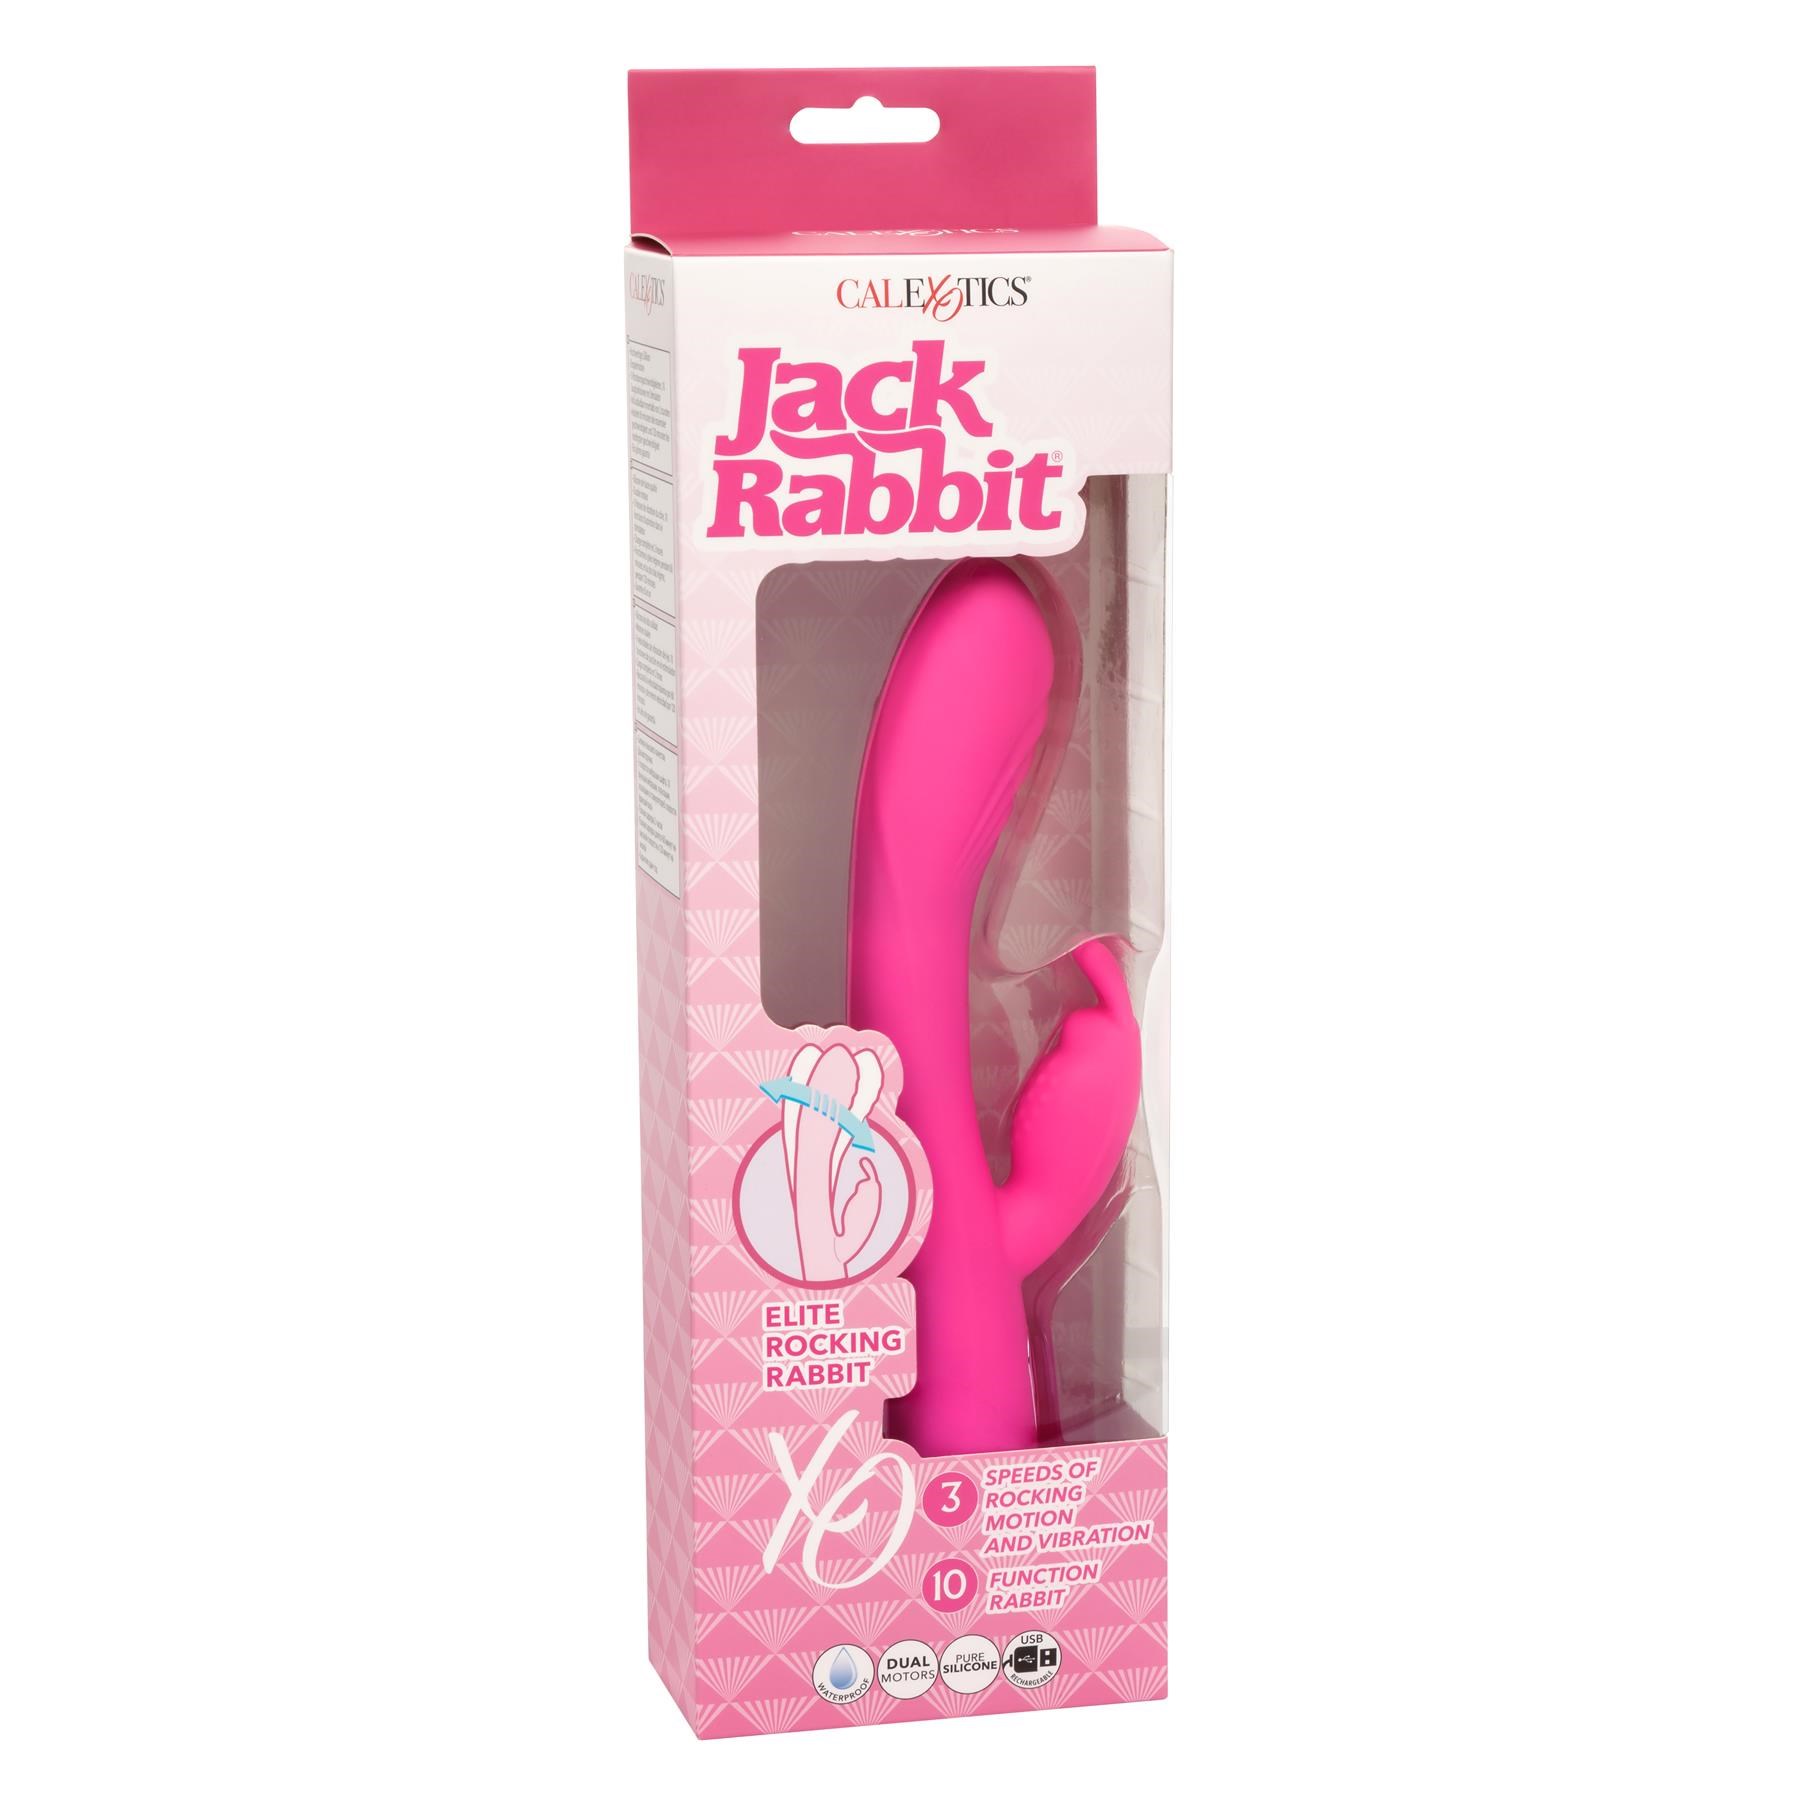 Jack Rabbit Elite Rocking Rabbit - Packaging